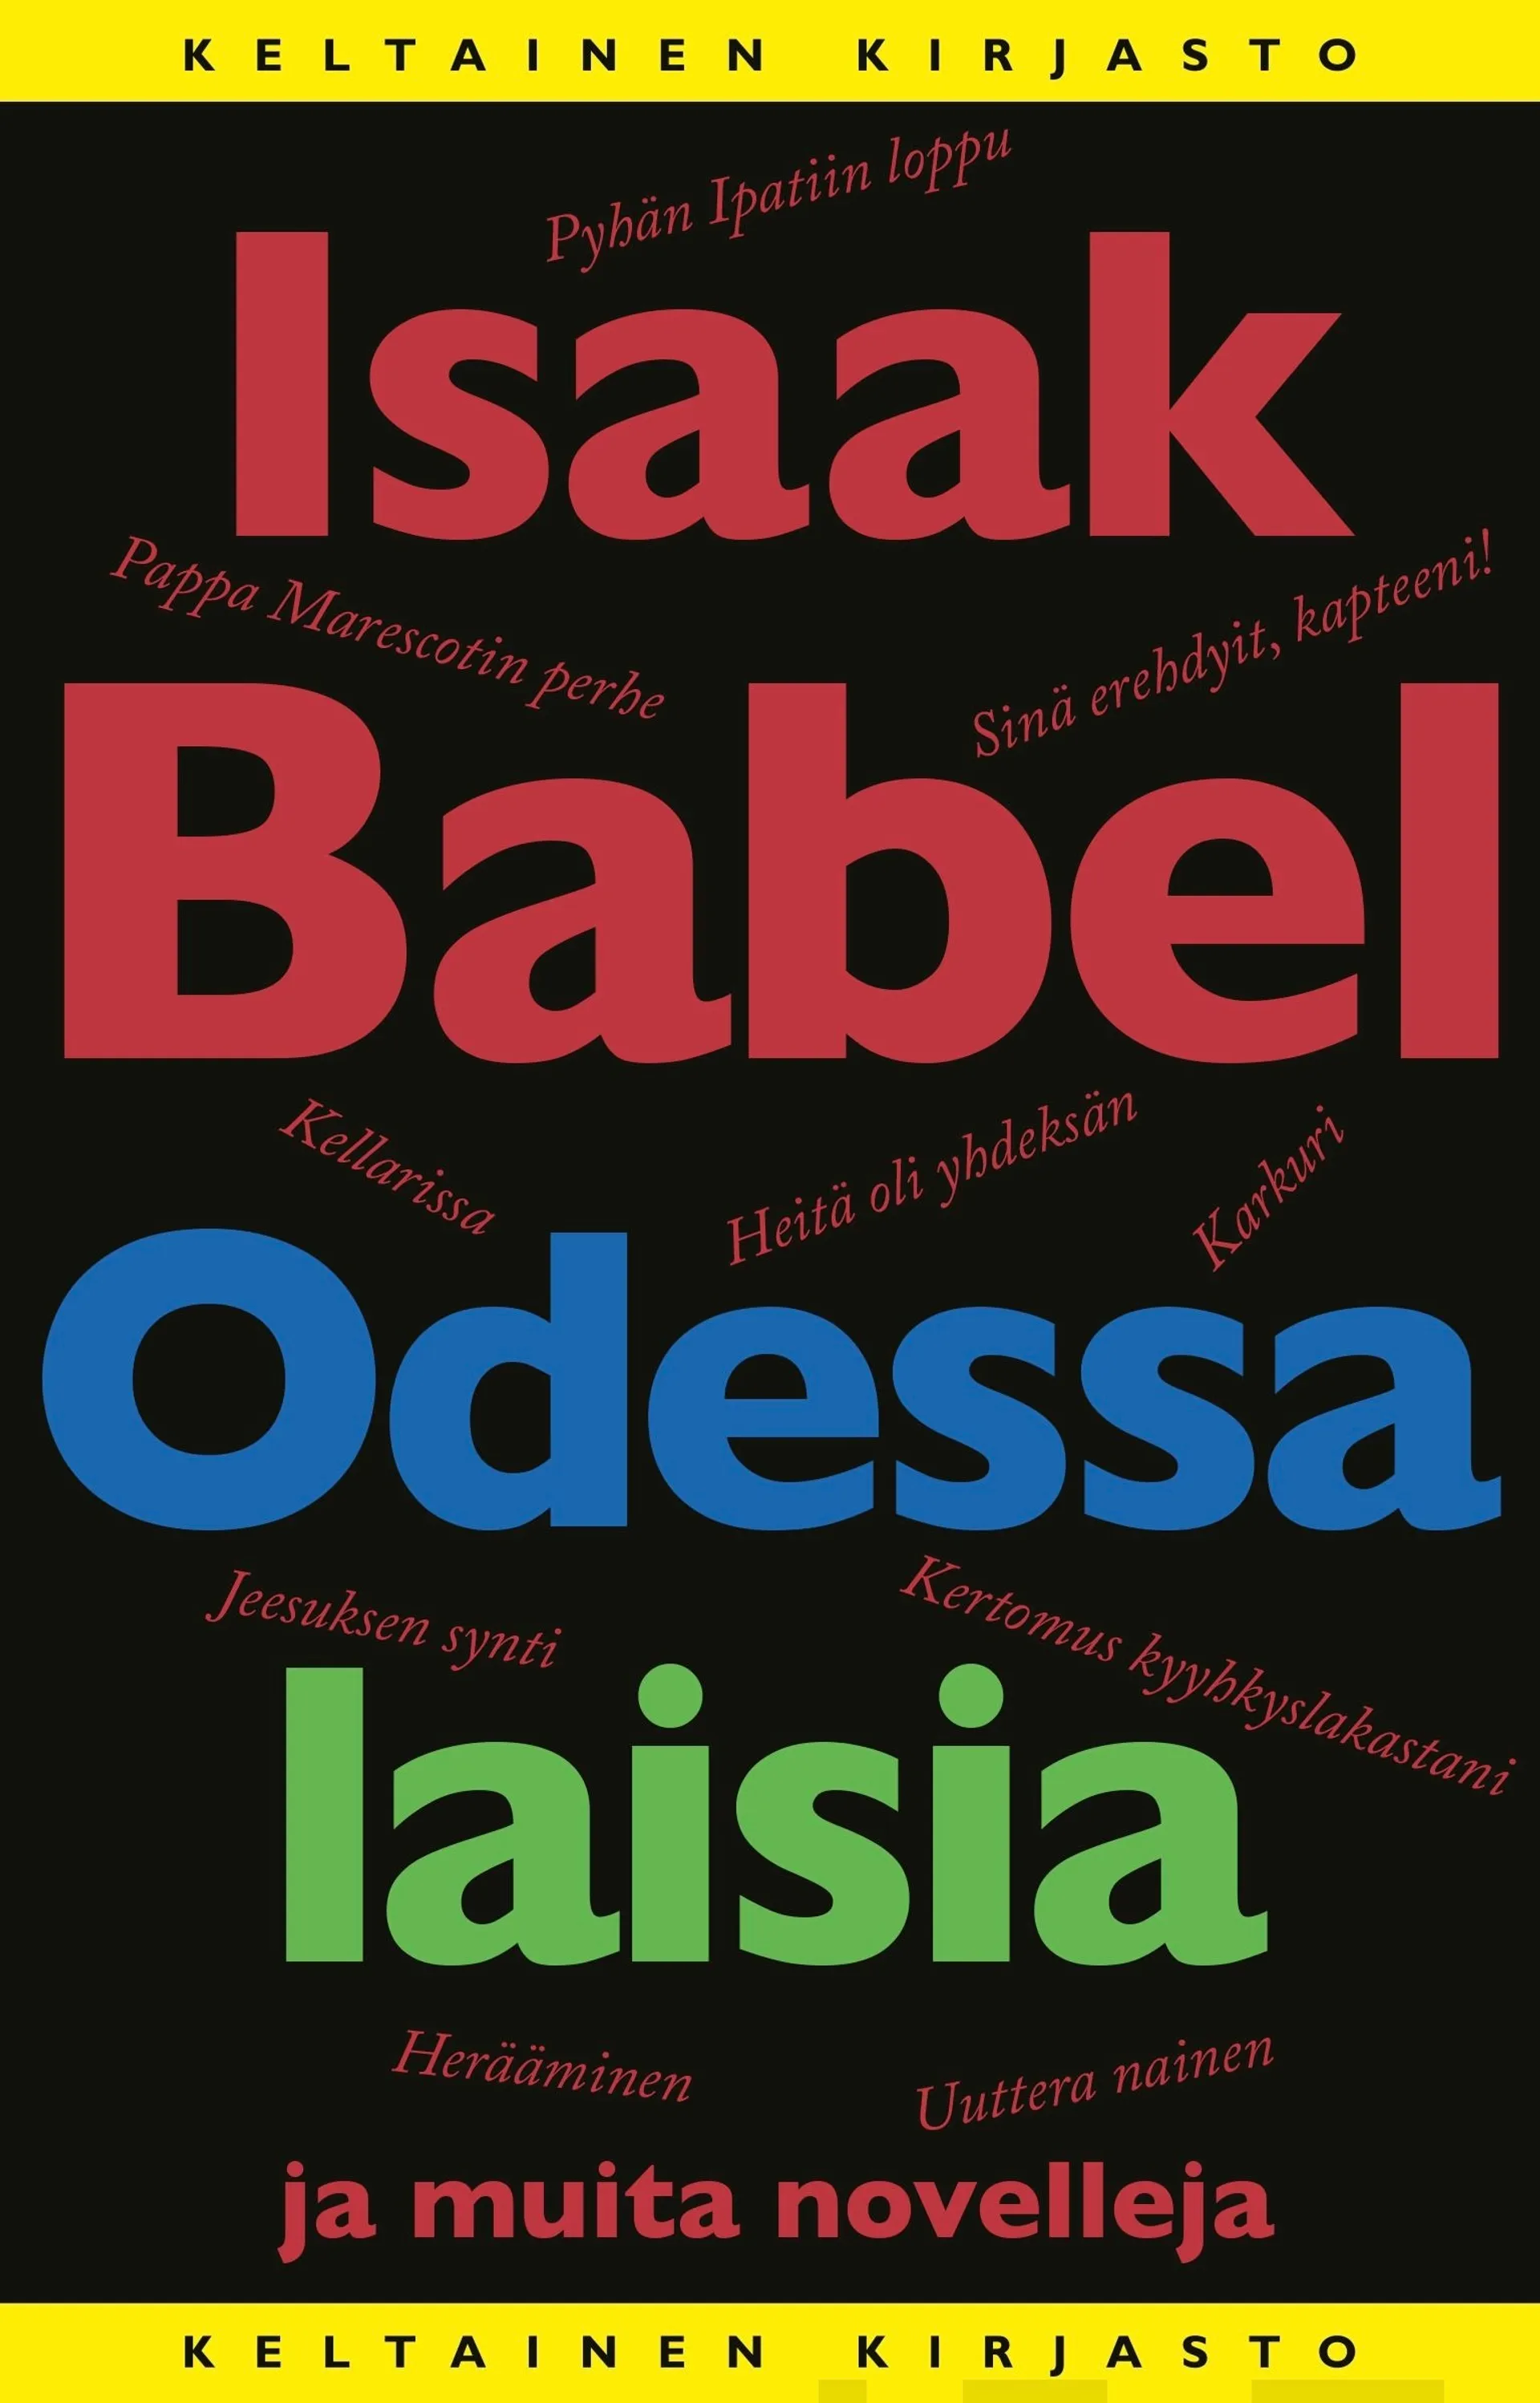 Babel, Odessalaisia ja muita novelleja